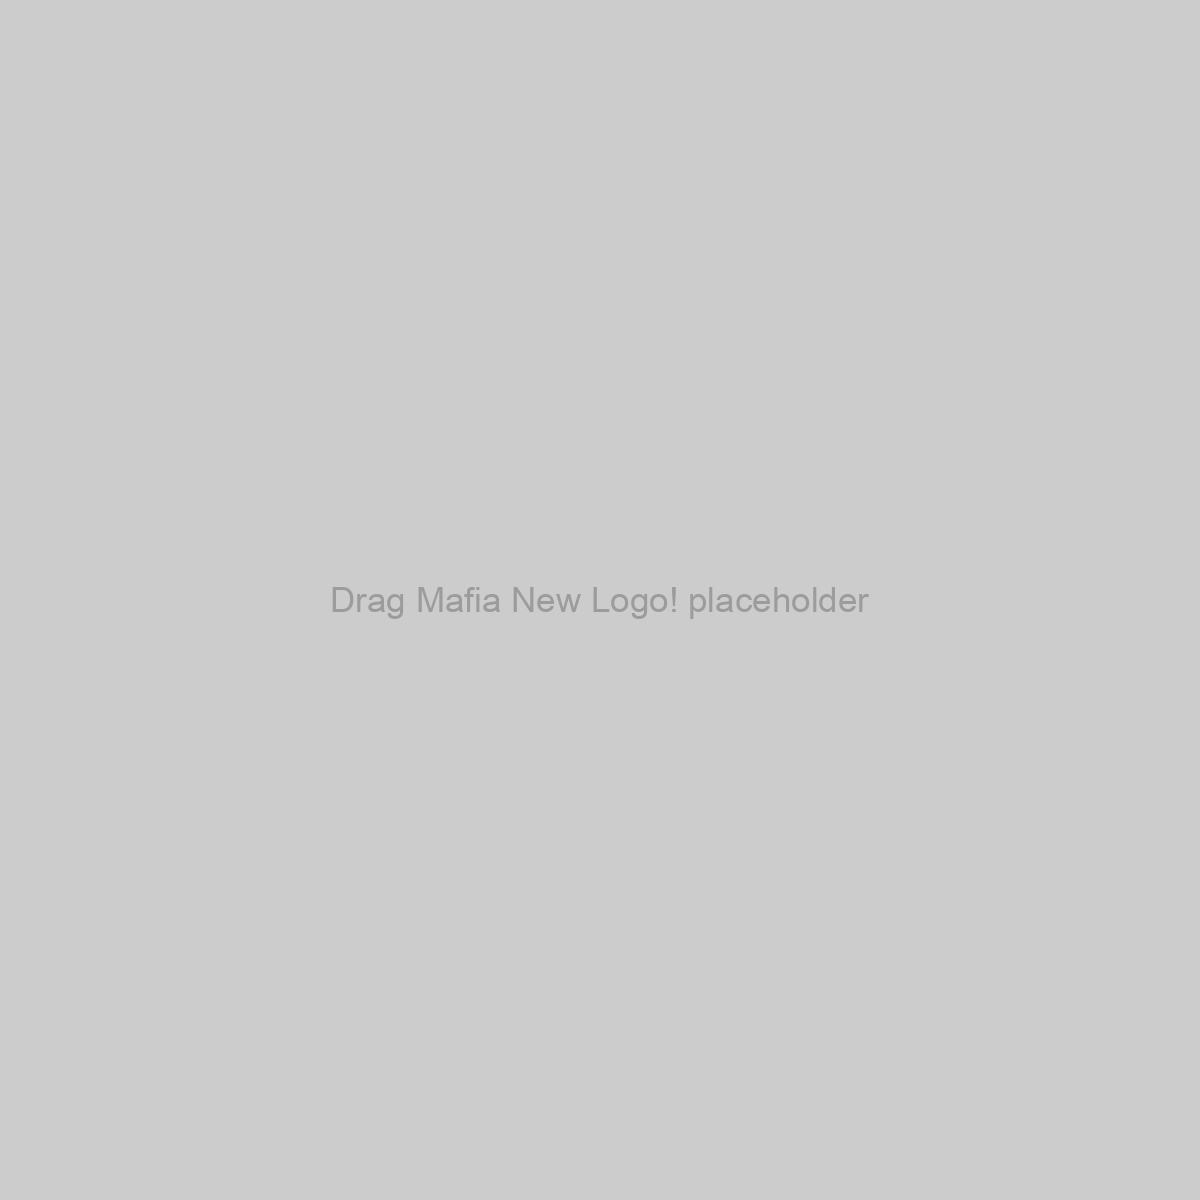 Drag Mafia New Logo! Placeholder Image